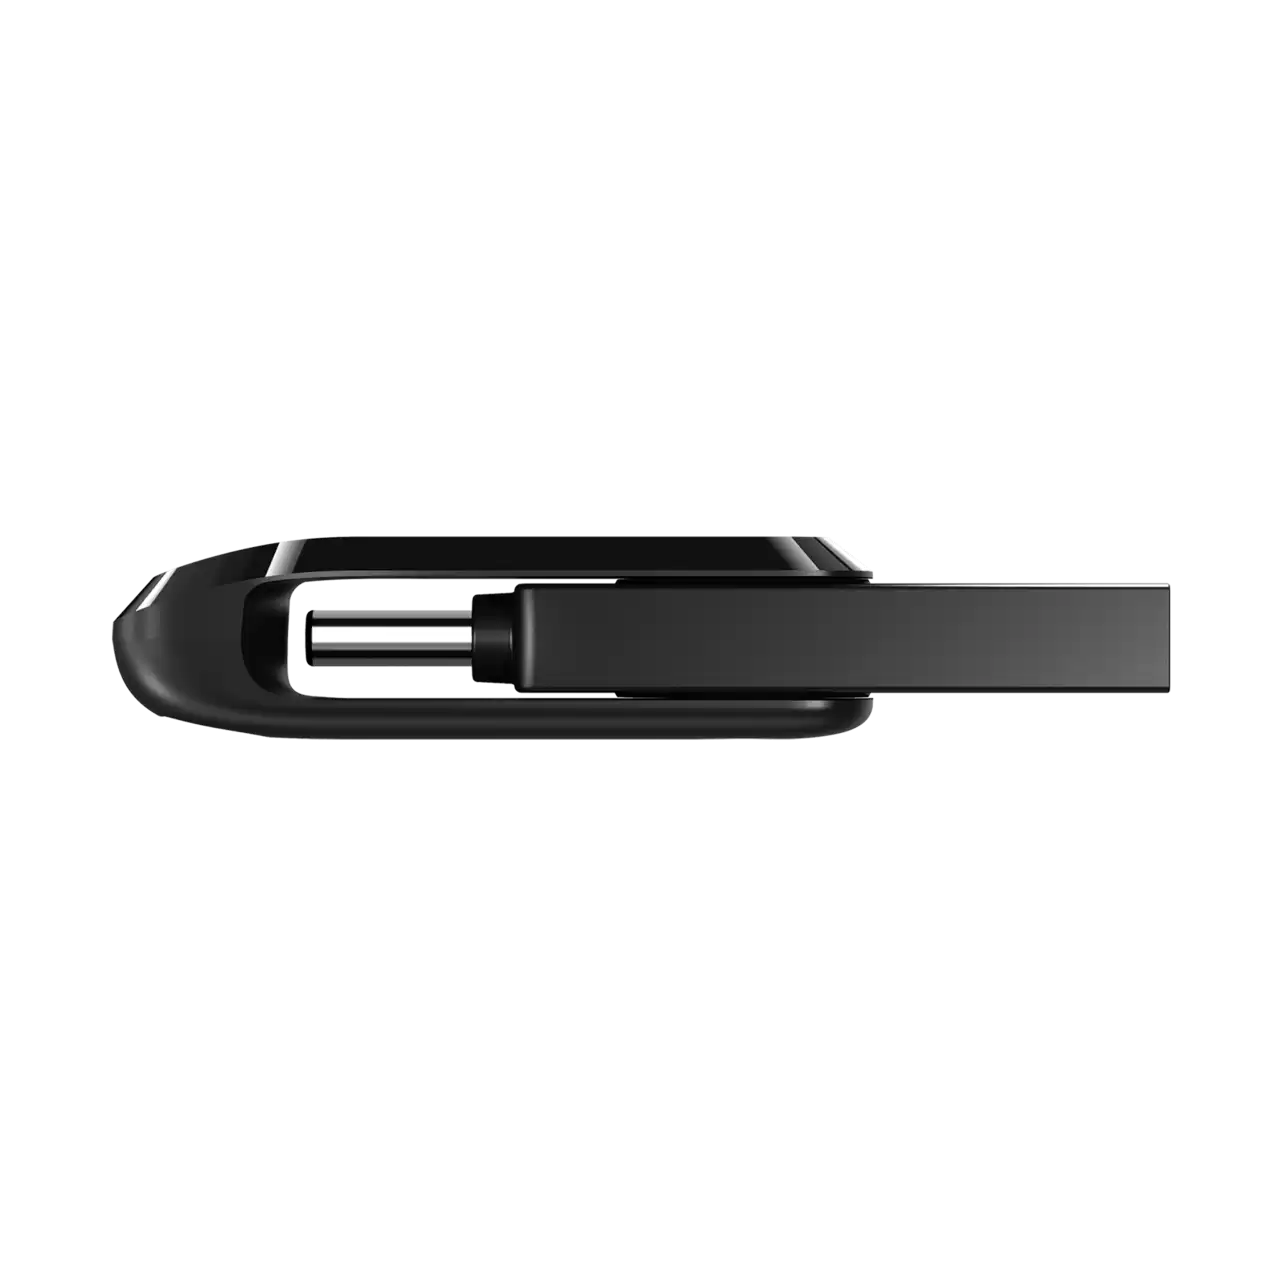 SanDisk Ultra Dual Drive USB 3.1 to USB Type-C OTG Flash Drive with 150MB/s Read Speed (32GB, 64GB, 128GB, 256GB) (Black, Mint Green) | SDDDC3